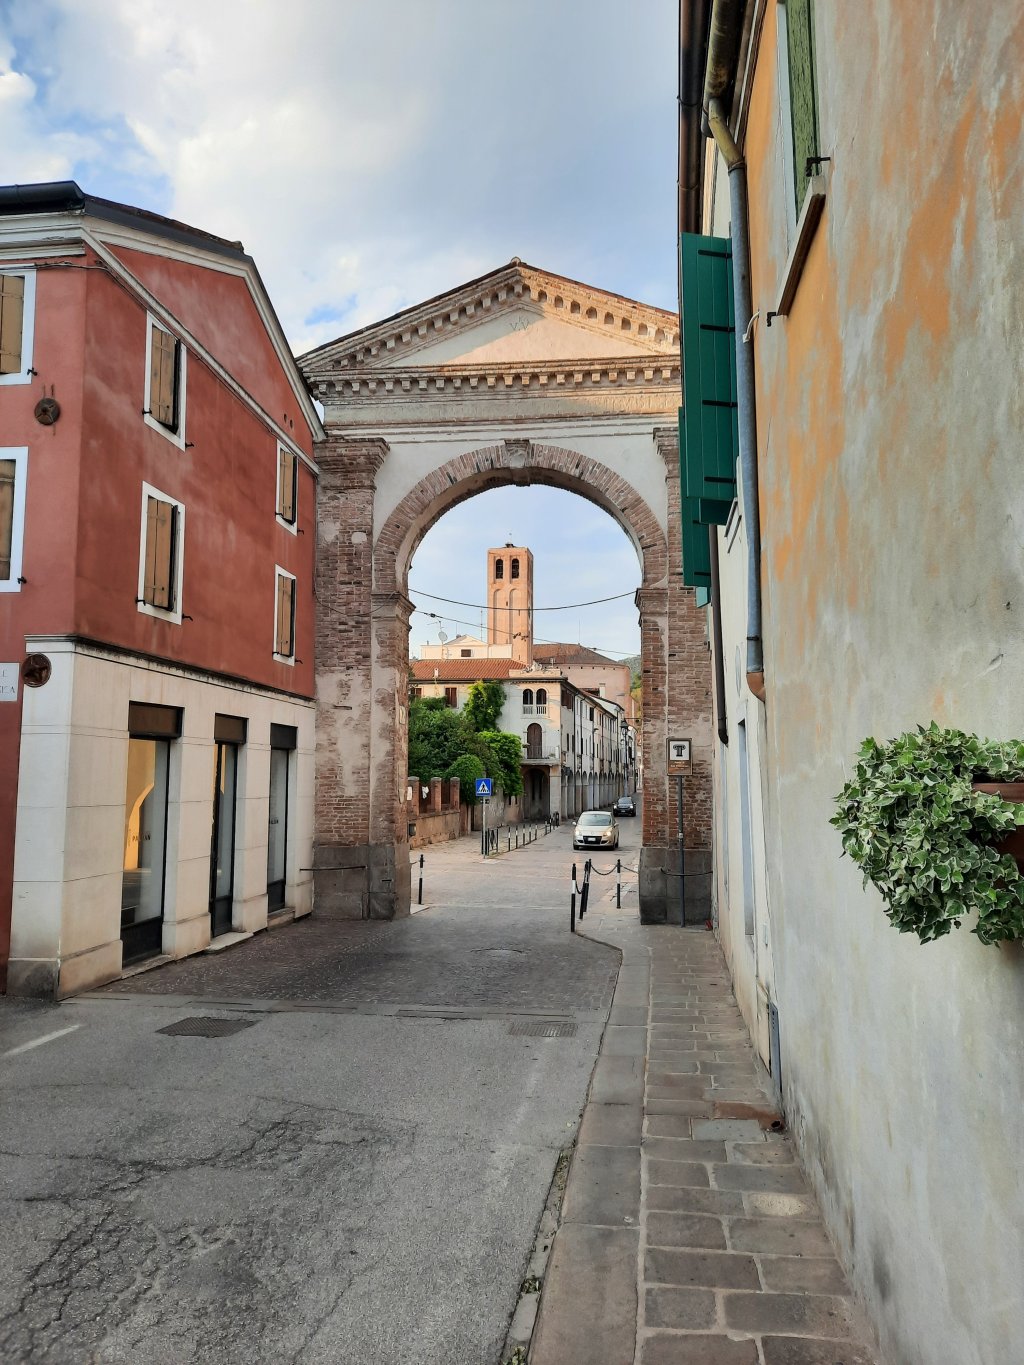 Detalle de la Porta San Francesco, Este. Padova – Veneto.